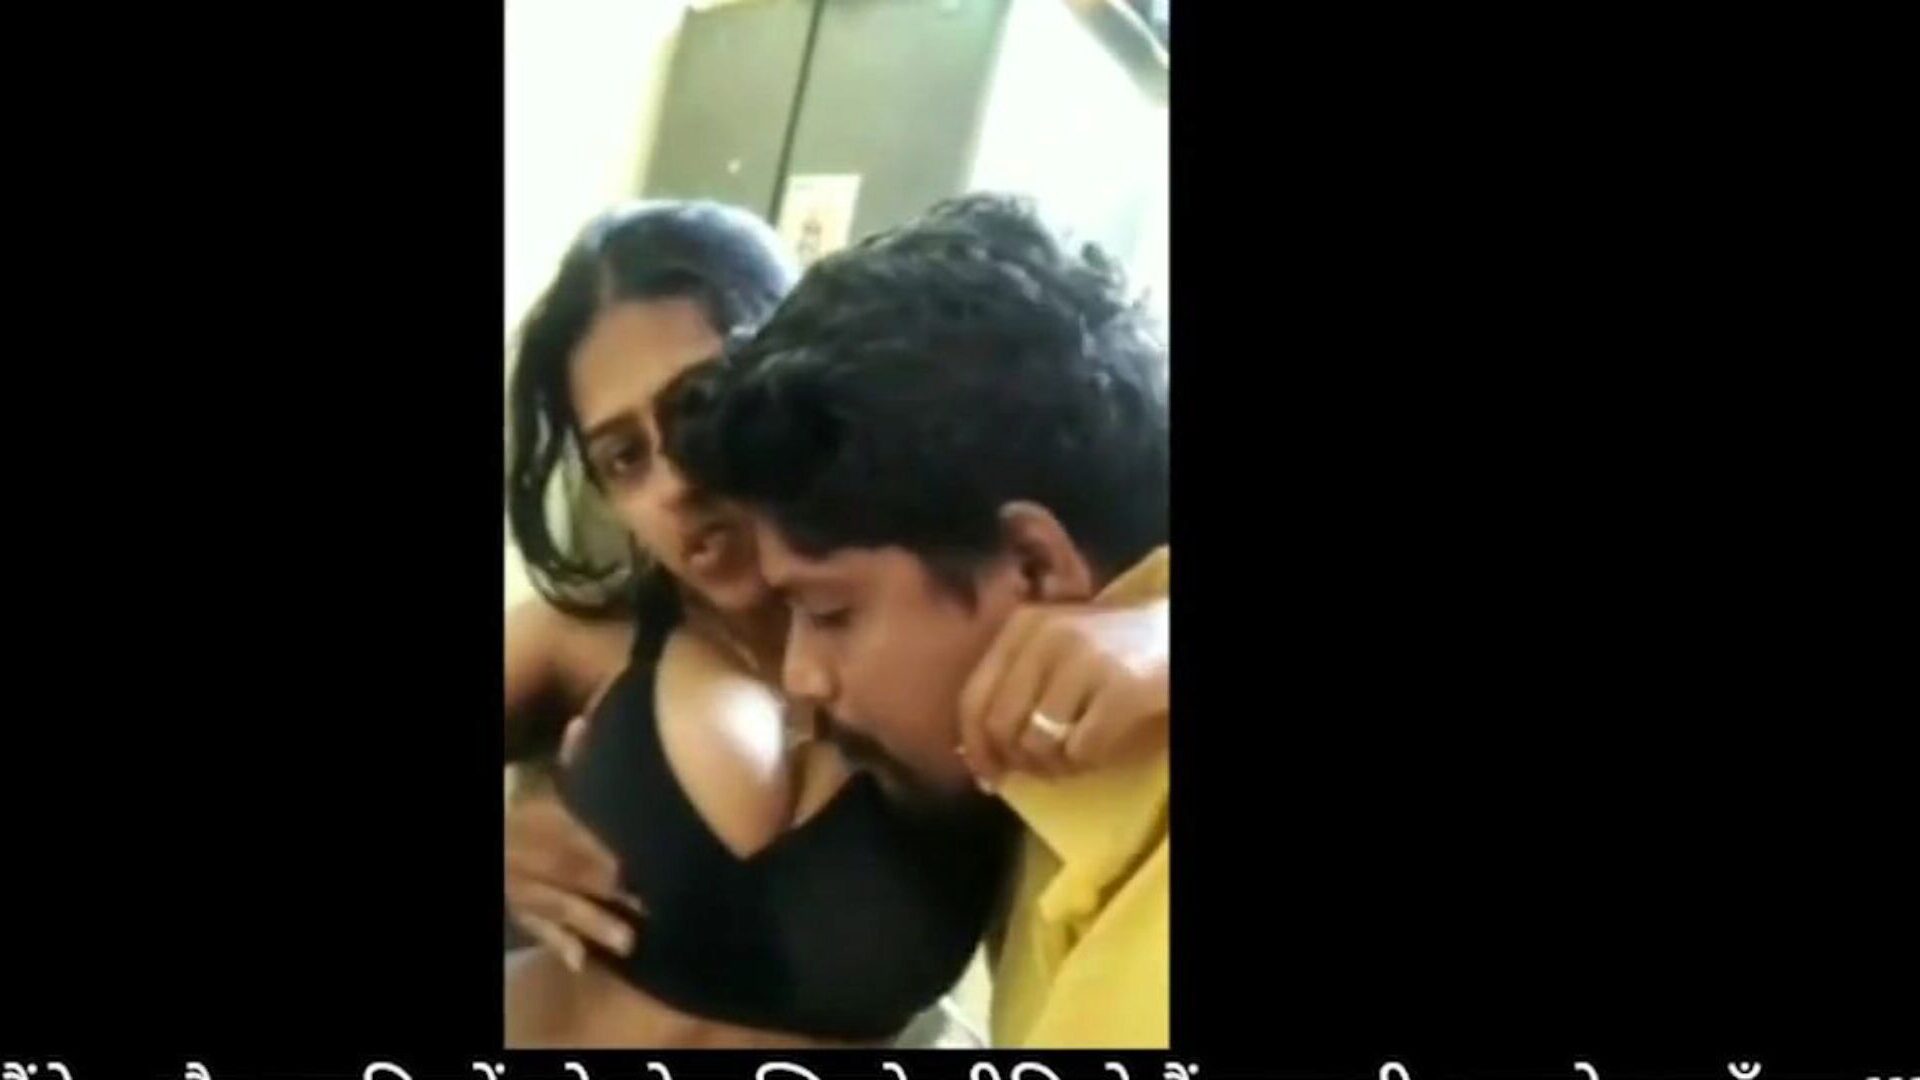 bhabhi devar domácí sex zábava během uzamčení: zdarma hd porno fa hodinky bhabhi devar domácí sex zábava během uzamčení epizody na xhamster - konečný archiv free-for-all indické zdarma domácí sex hd xxx porno porno trubka vids